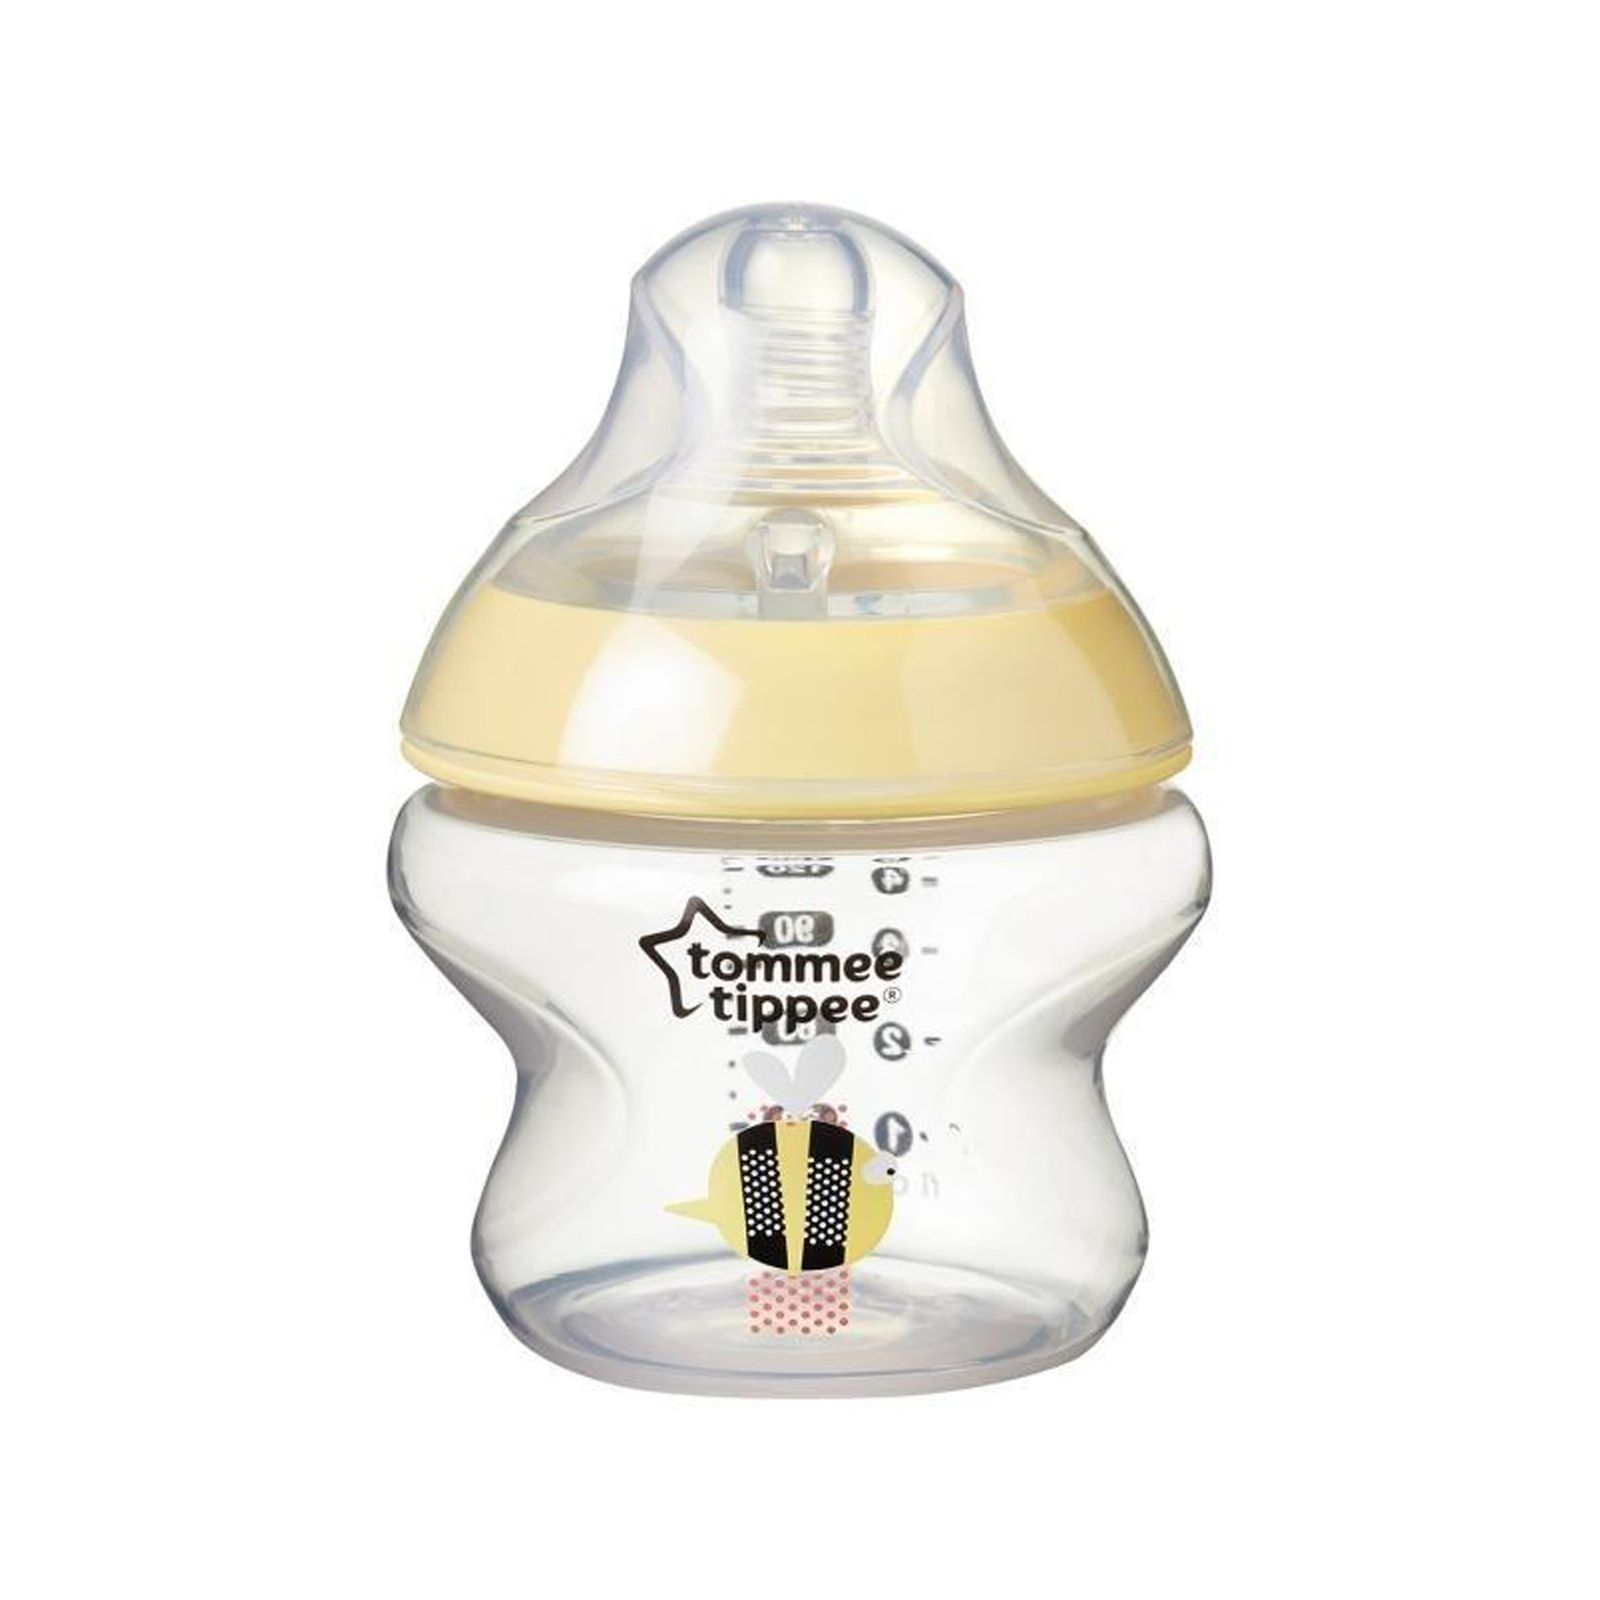 شیشه شیر تامی تیپی مدل T42270185 گنجایش 150میلی لیتر -  - 1